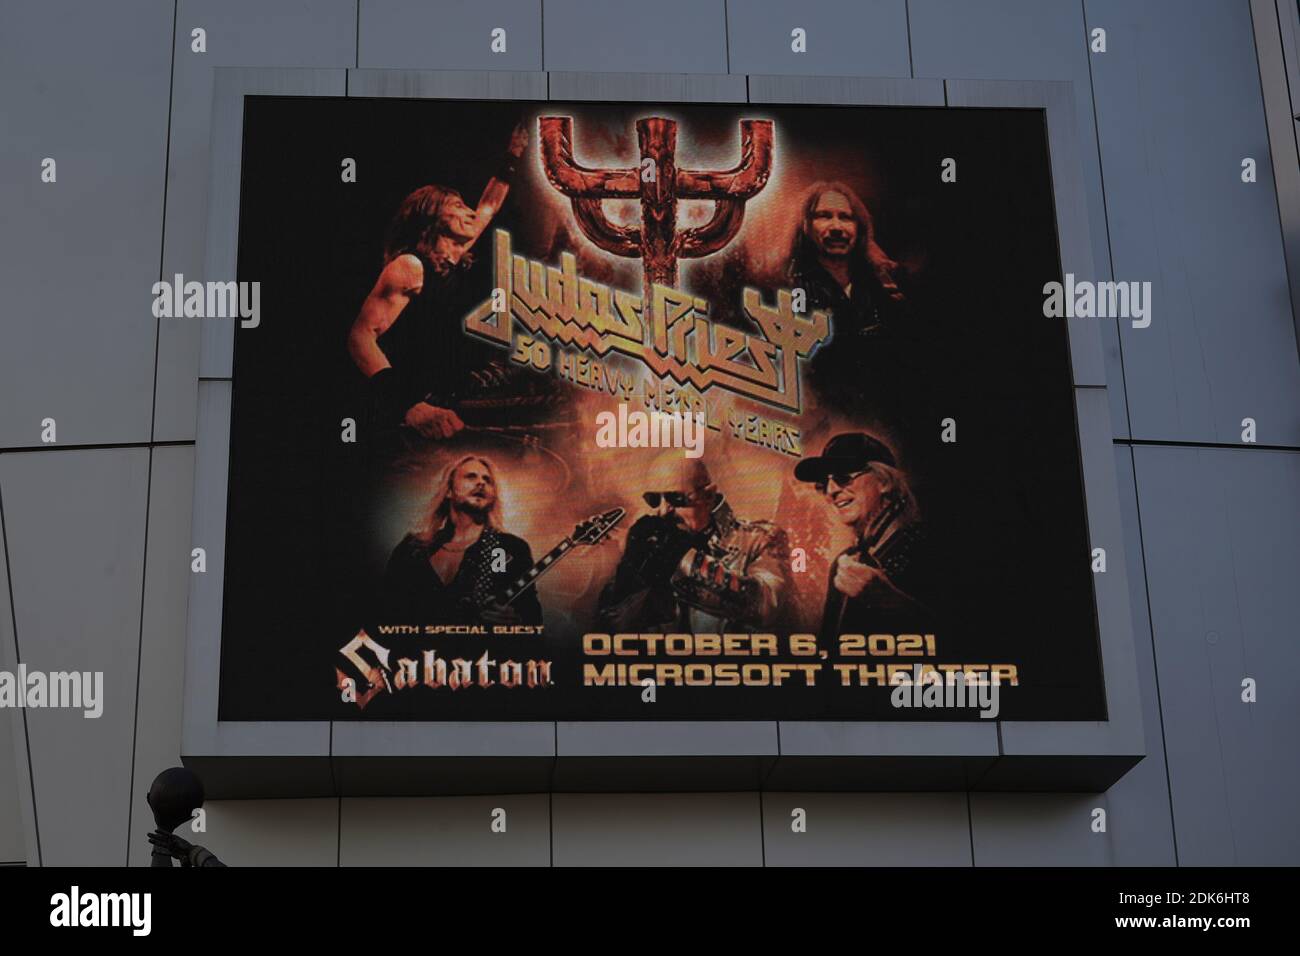 Une publicité pour le concert Judas Priest au Microsoft Theatre du Staples Center, le lundi 14 décembre 2020, à Los Angeles. Banque D'Images